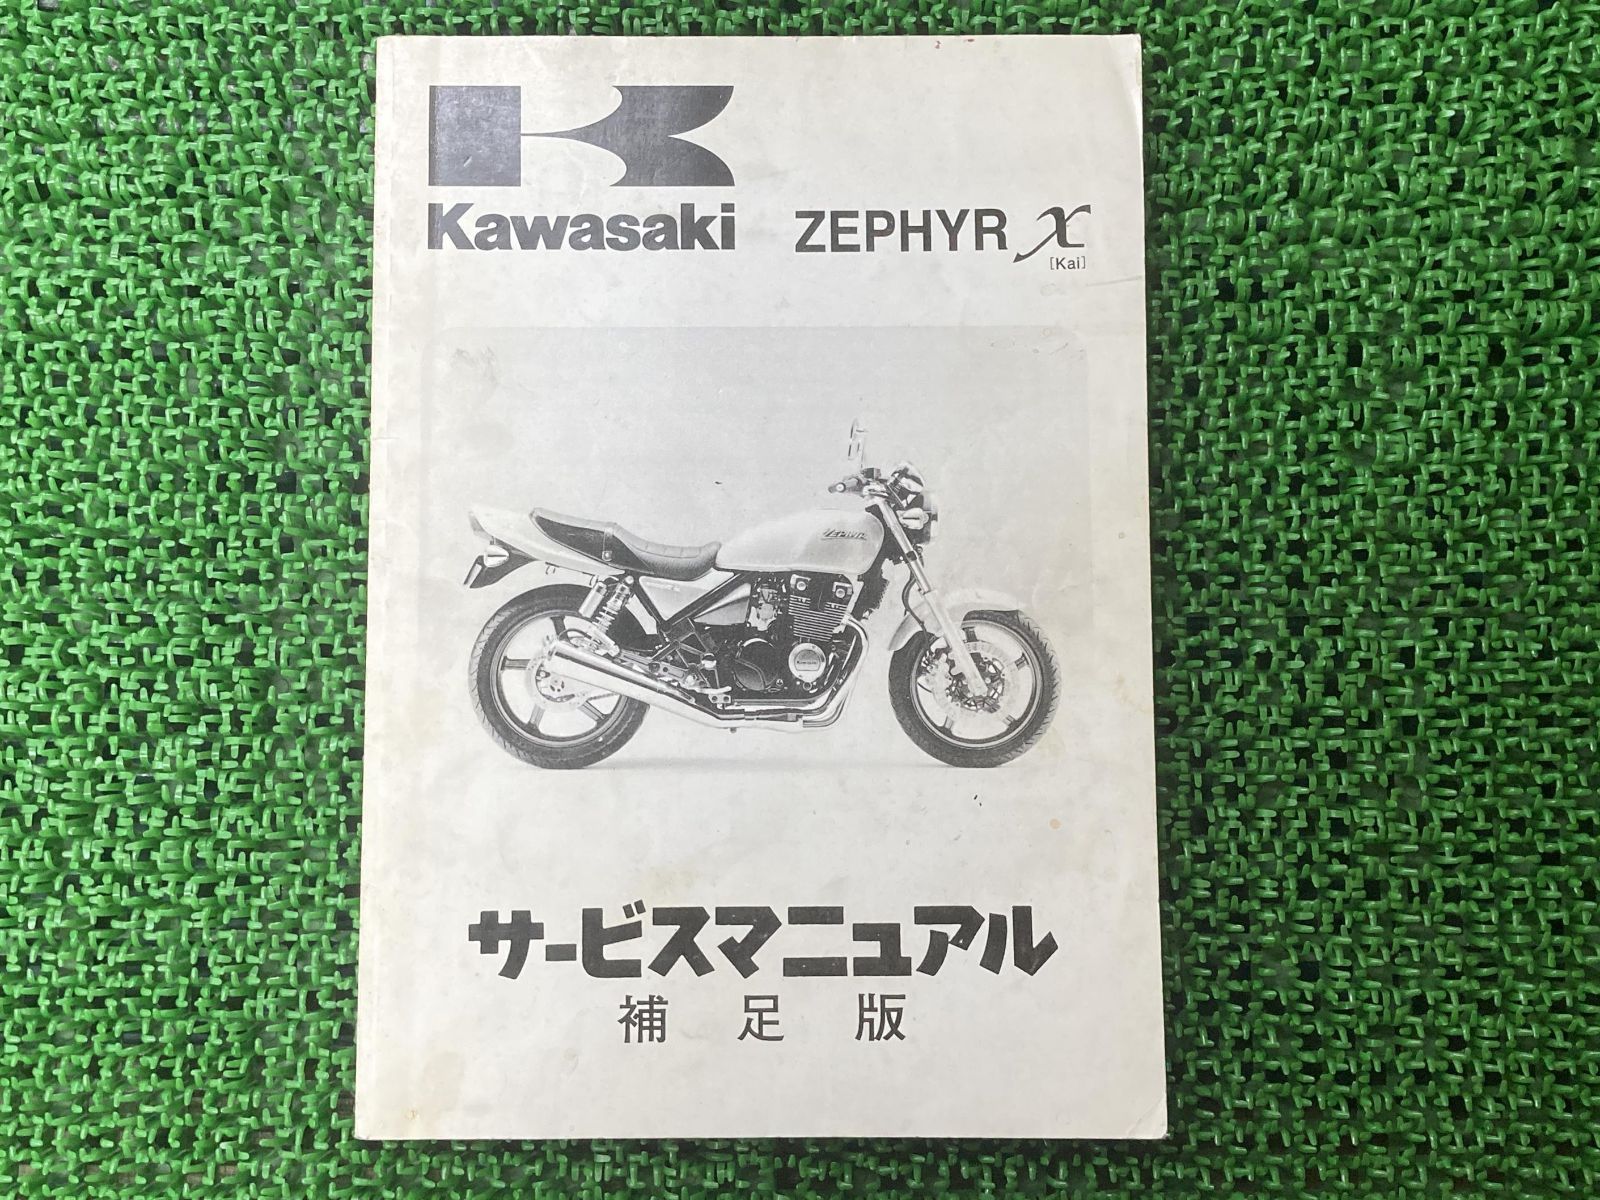 Kawasaki ゼファー サービスマニュアル パーツカタログ - カタログ